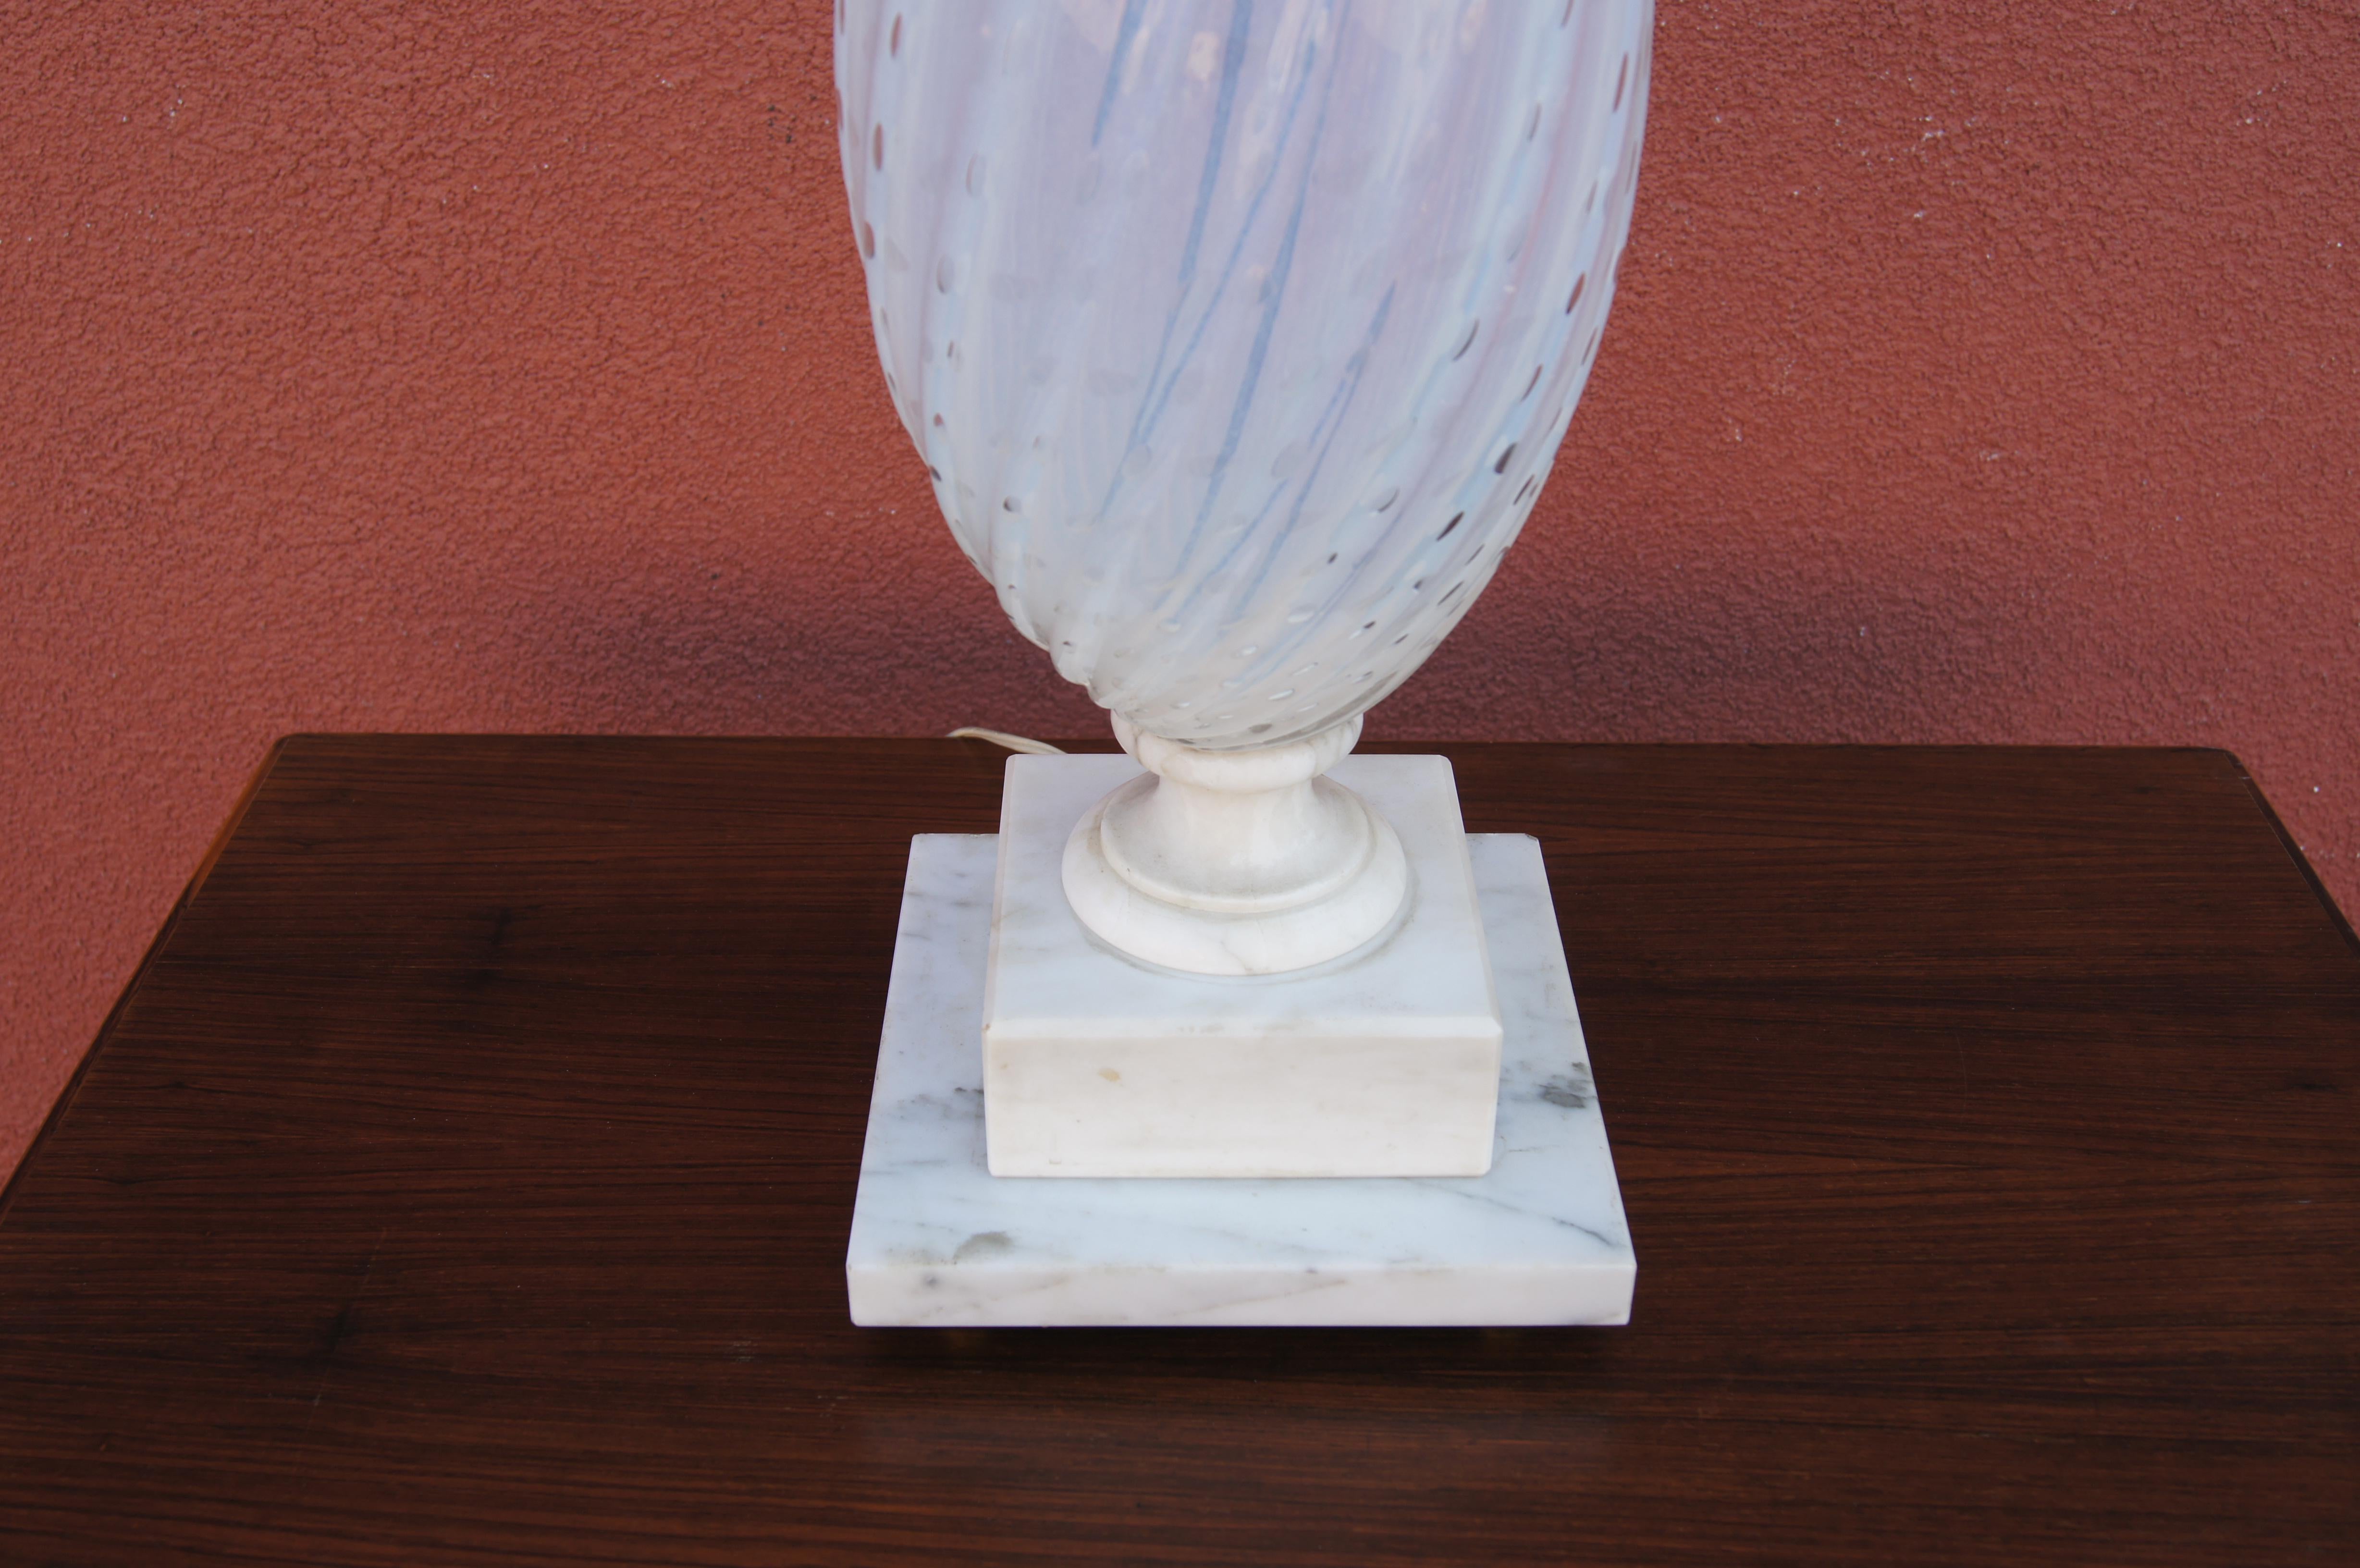 Diese hohe Tischleuchte aus Italien hat eine sanft gedrehte Tropfenform aus mundgeblasenem weißem Muranoglas, die auf einem klassischen quadratischen Marmorsockel steht.

Die unten angegebenen Maße beziehen sich auf die Oberseite des